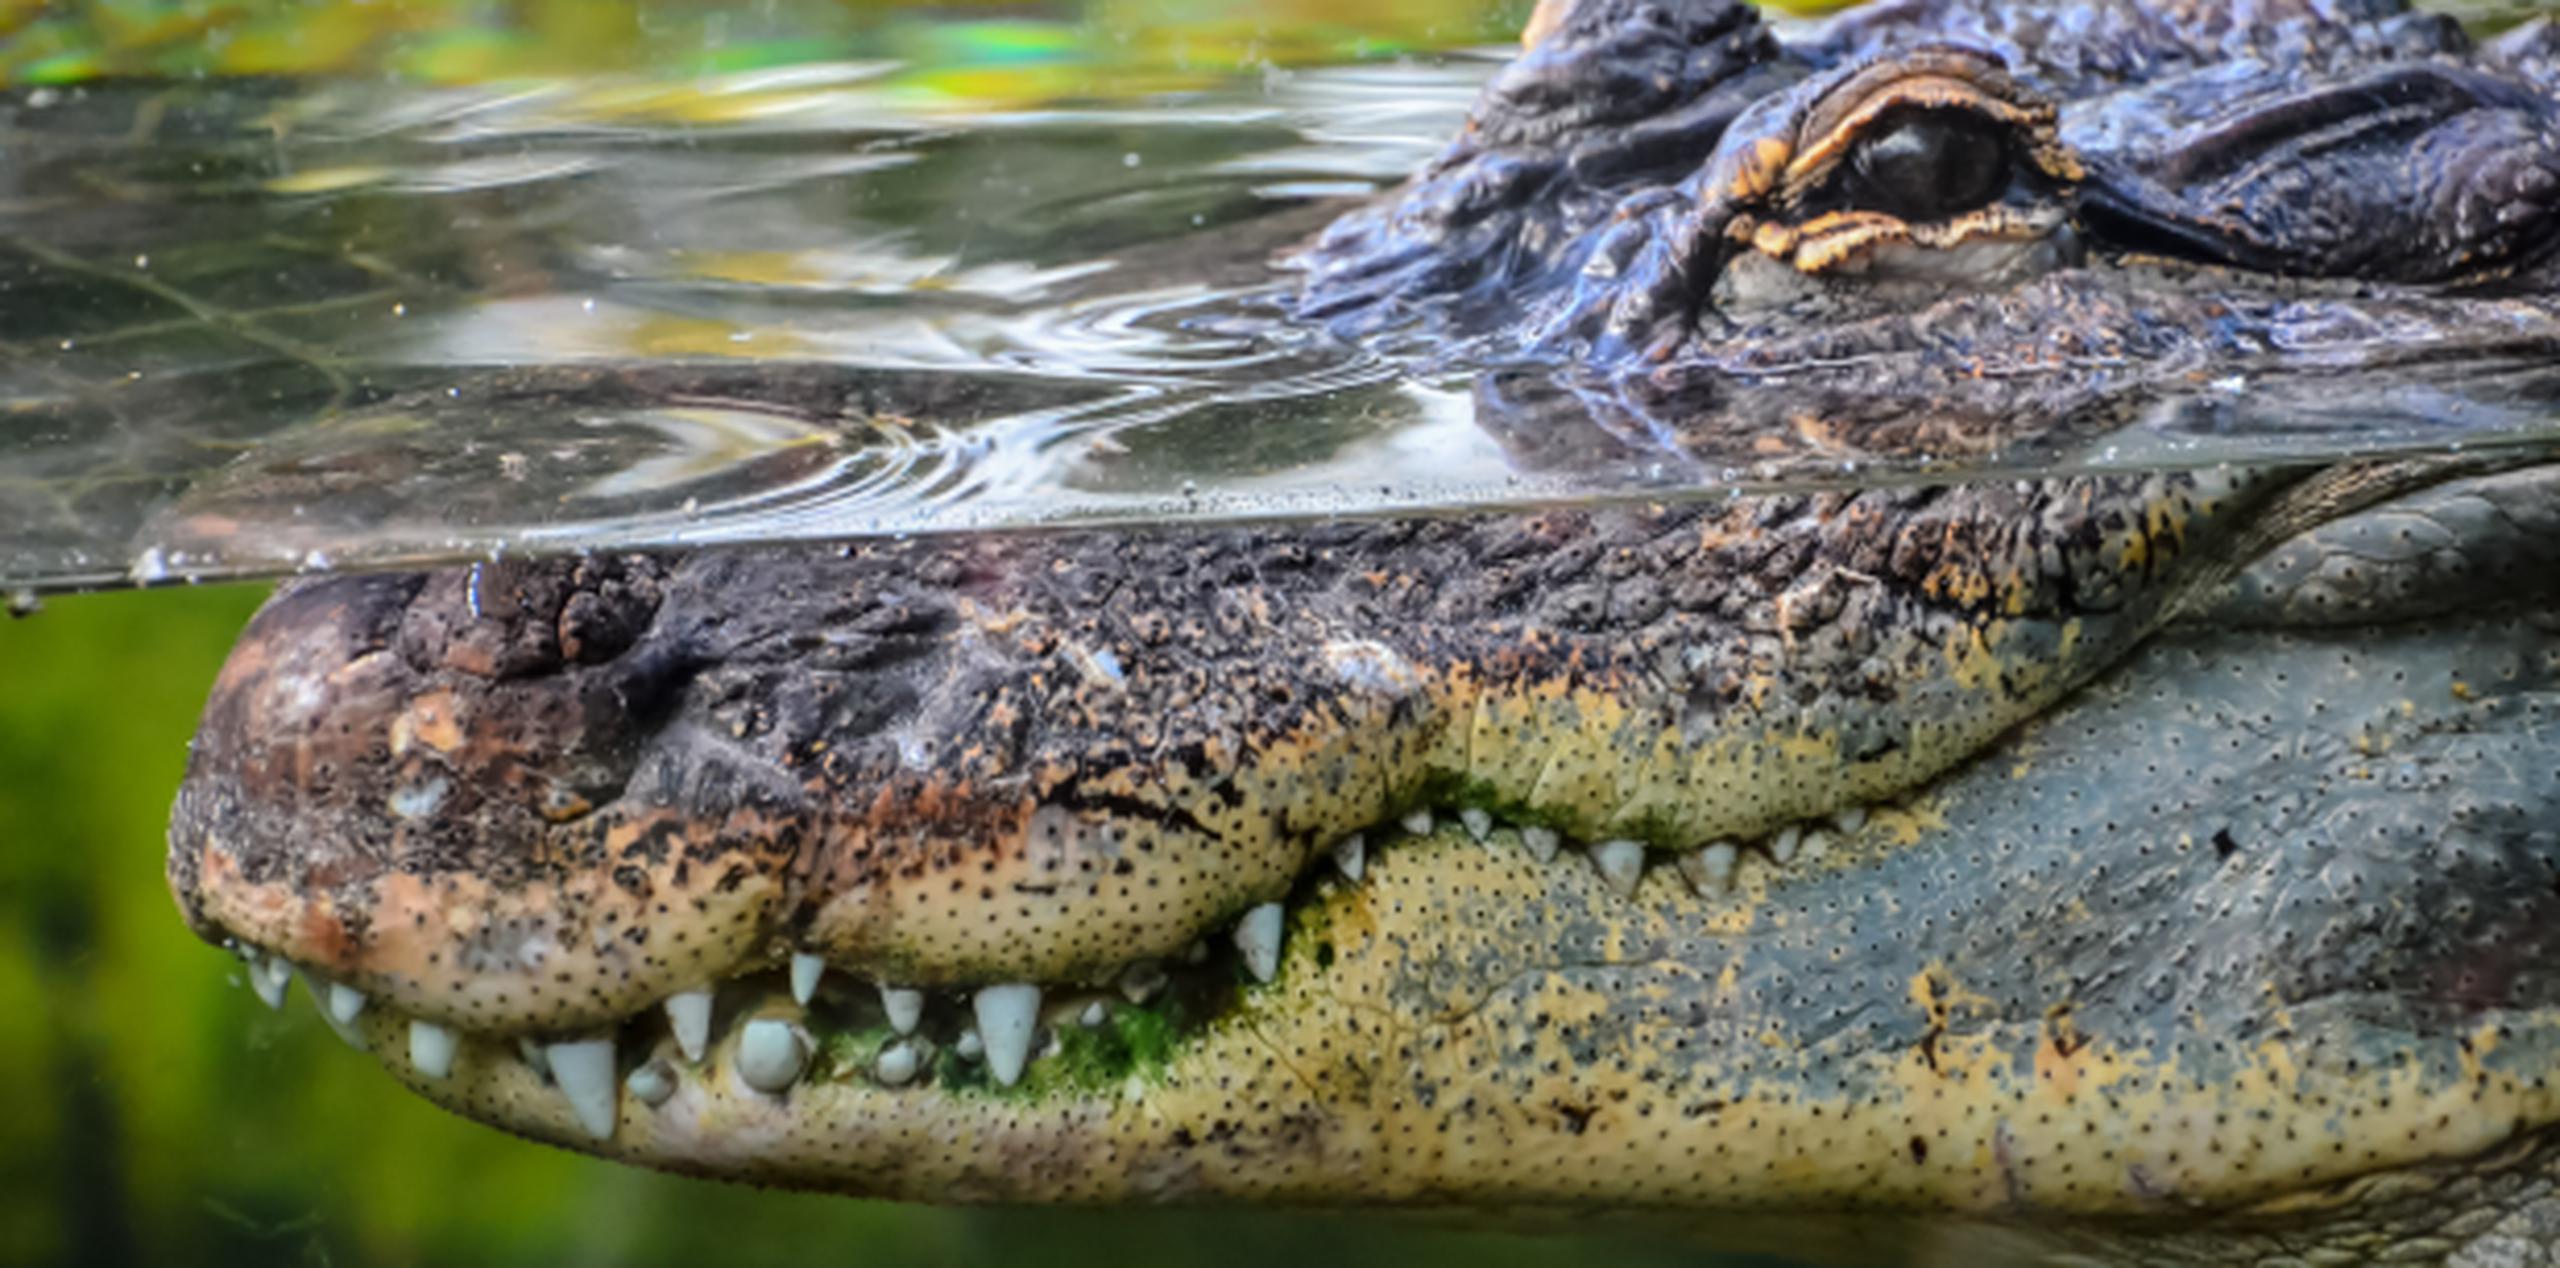 El reptil medía casi nueve pies de largo. (Shutterstock)